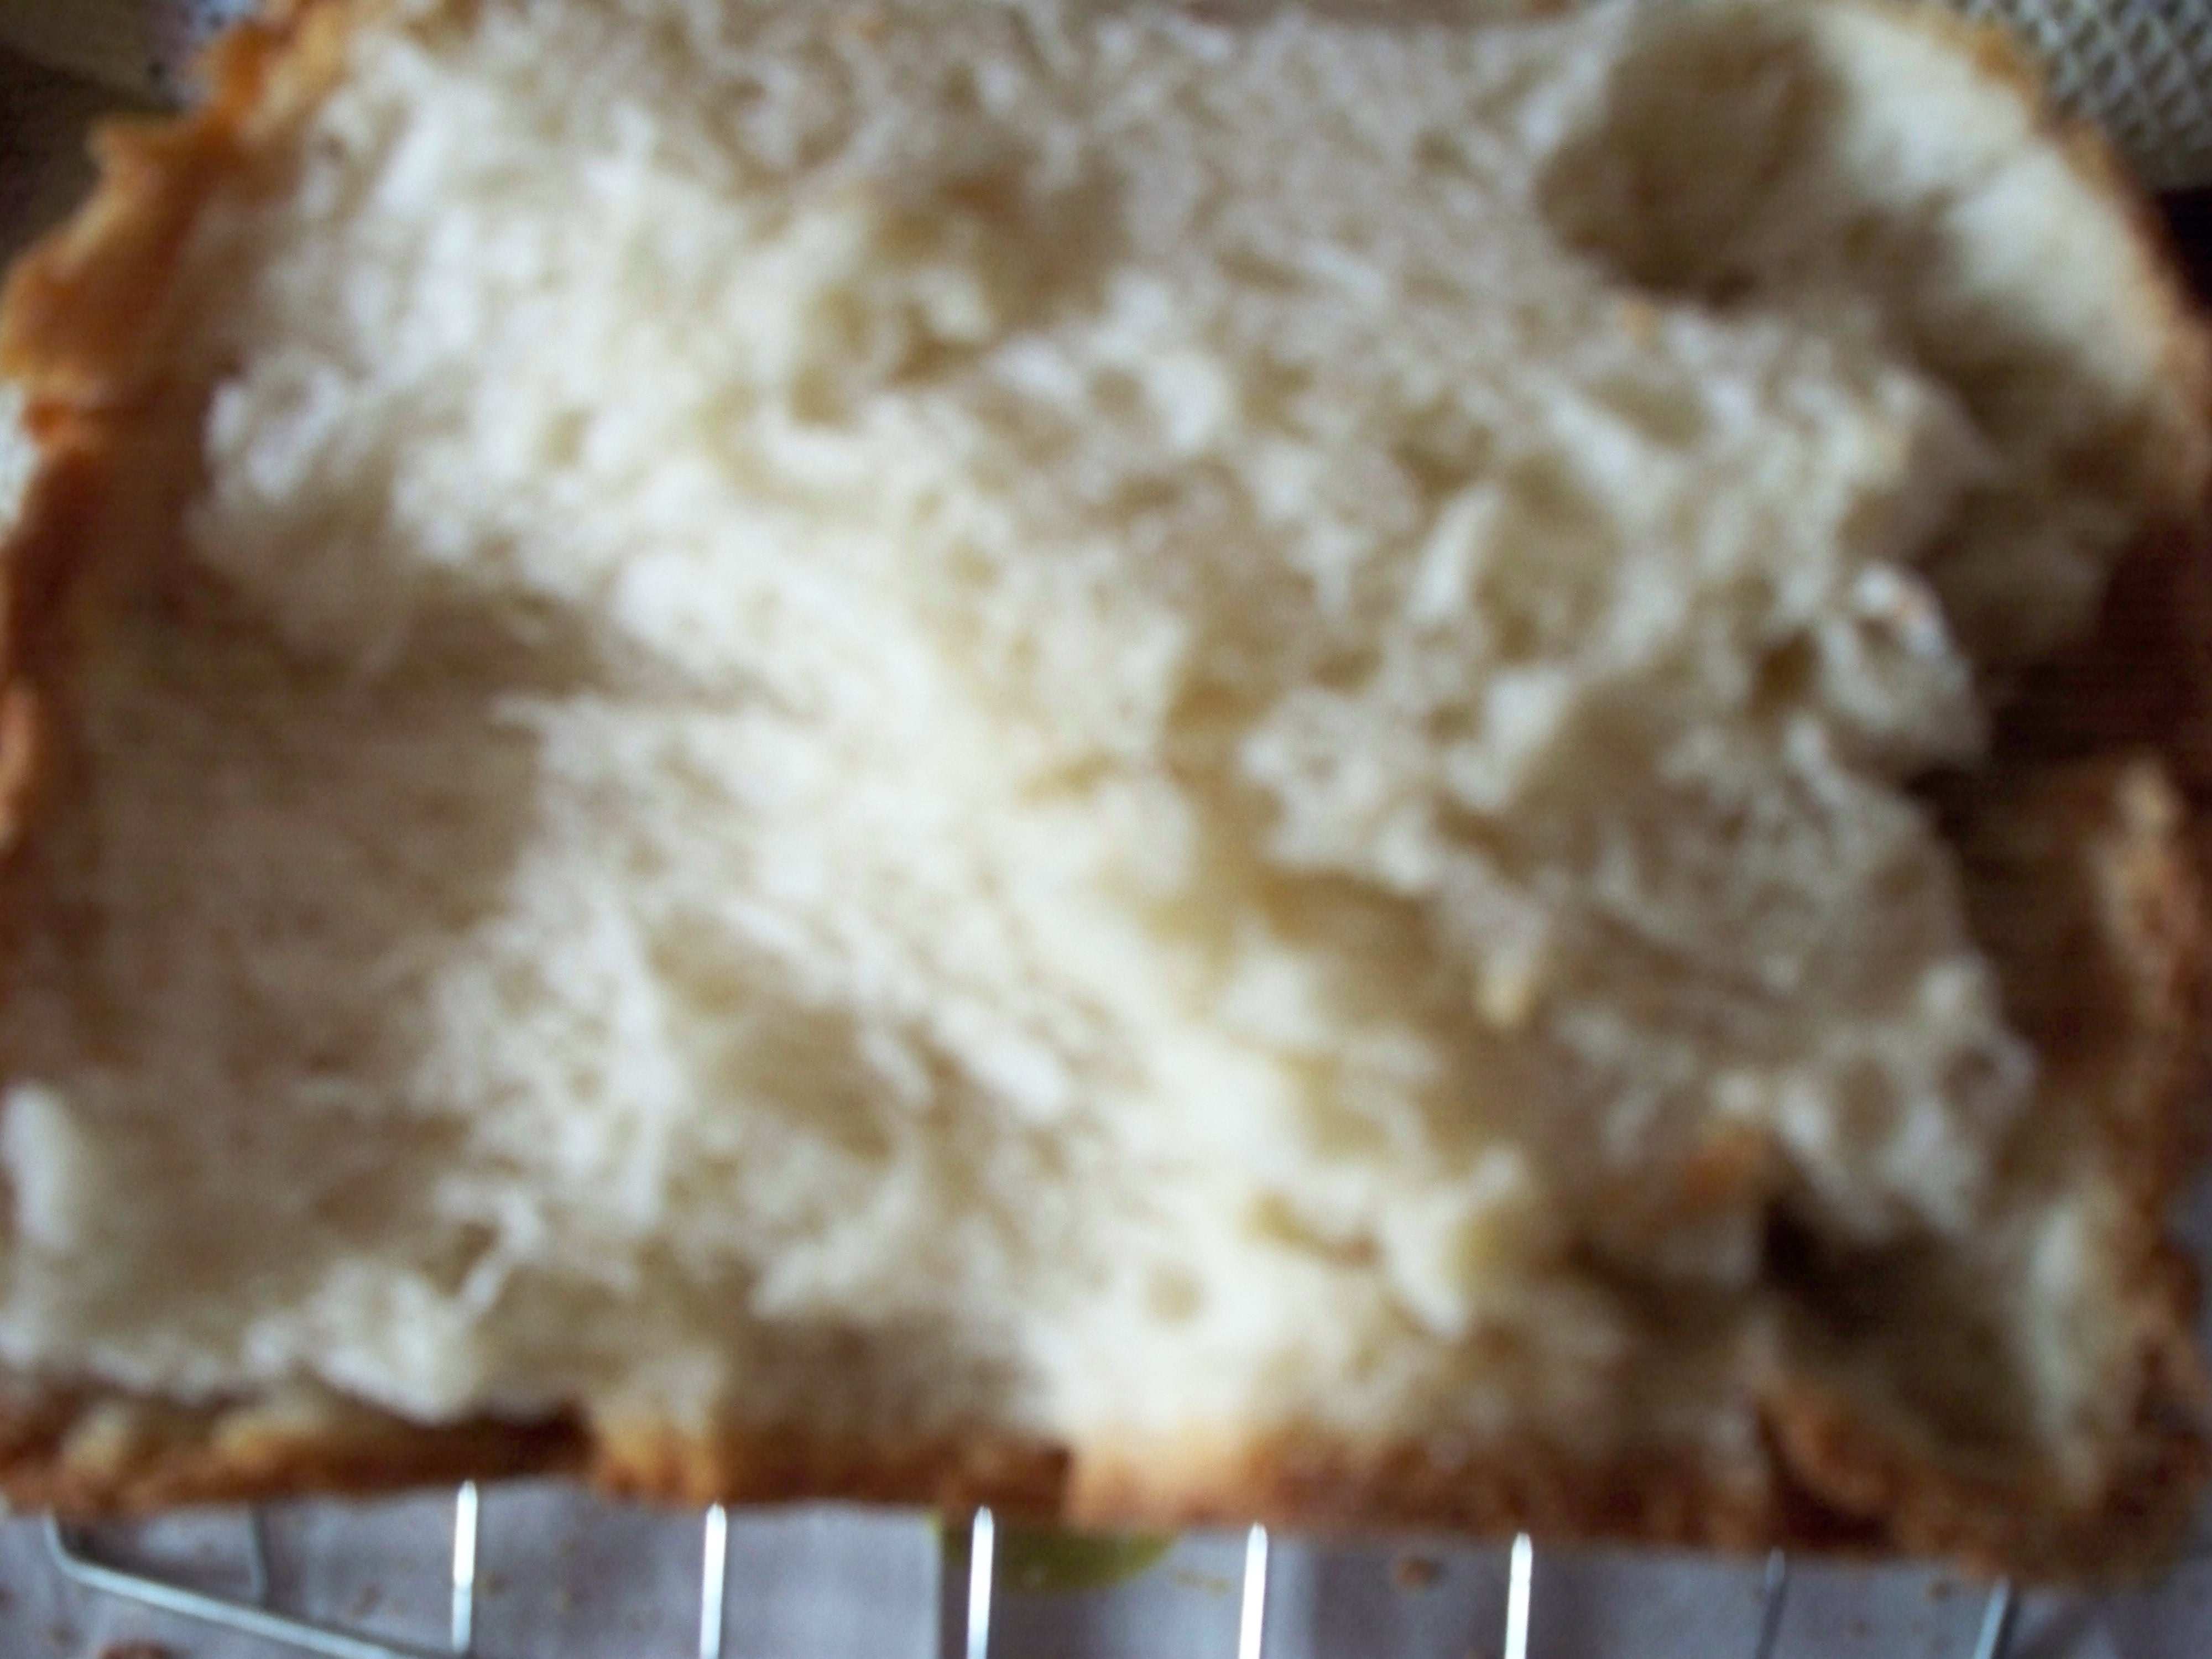 Boterbroodje op kefir met kaneel (broodbakmachine)